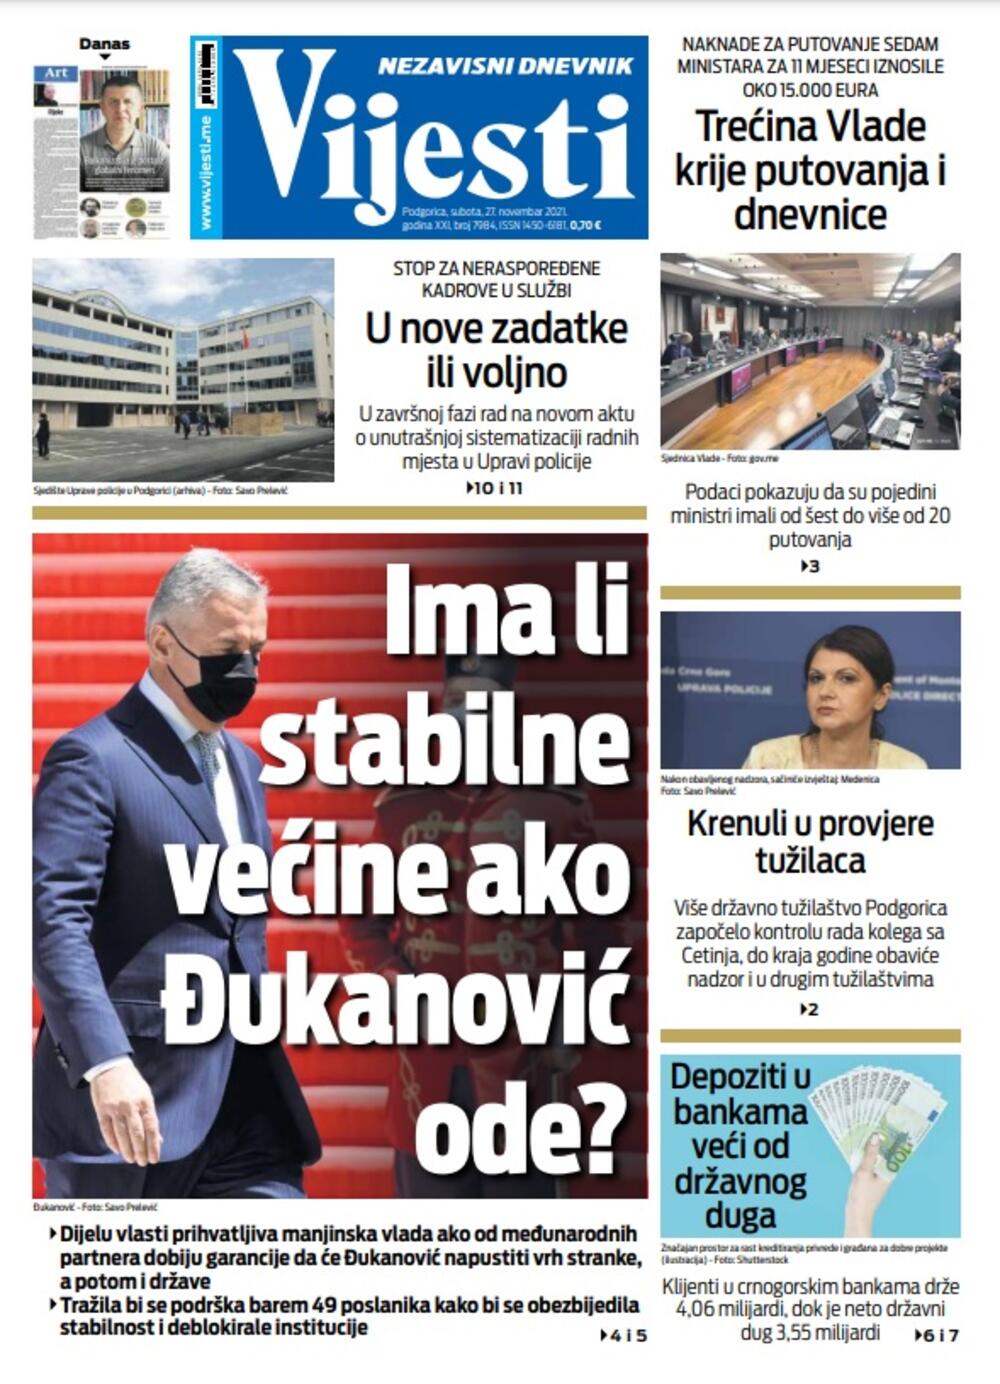 Naslovna strana "Vijesti" za 27. novembar, Foto: Vijesti